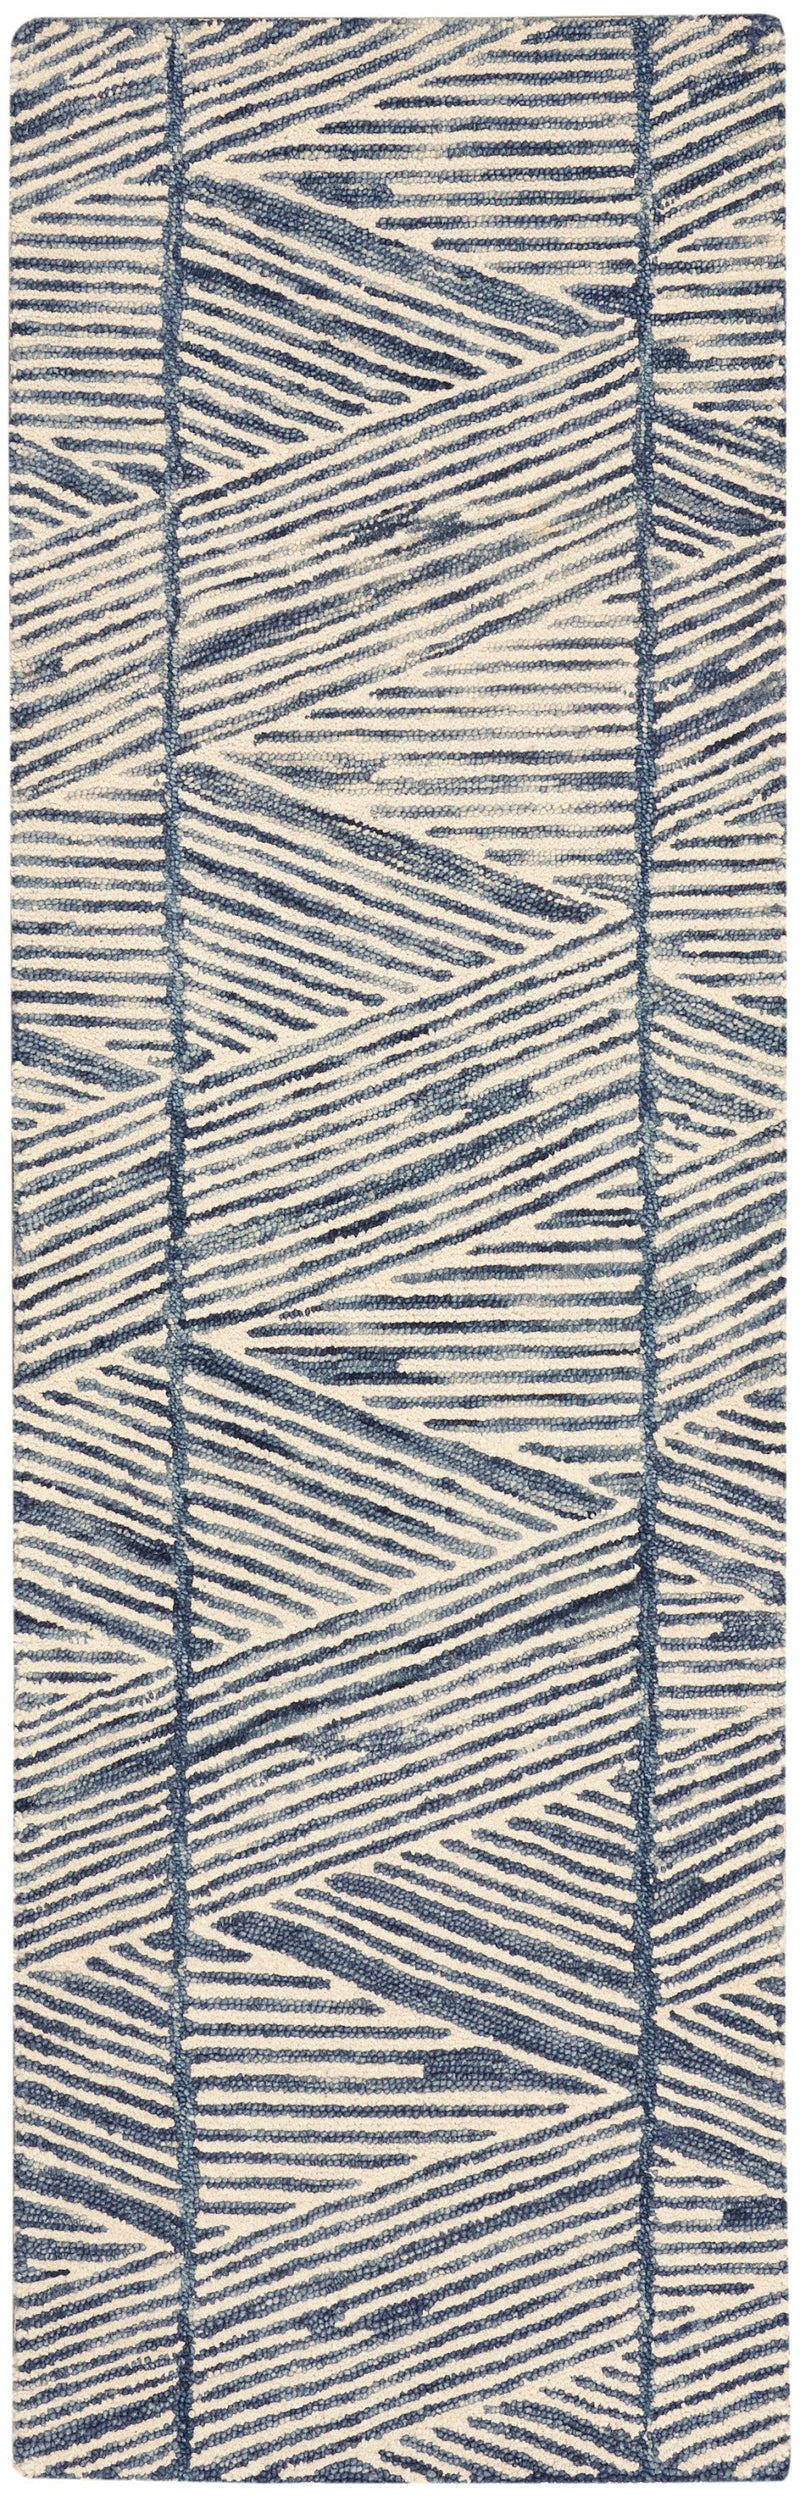 media image for colorado handmade white blue rug by nourison 99446786234 redo 2 235